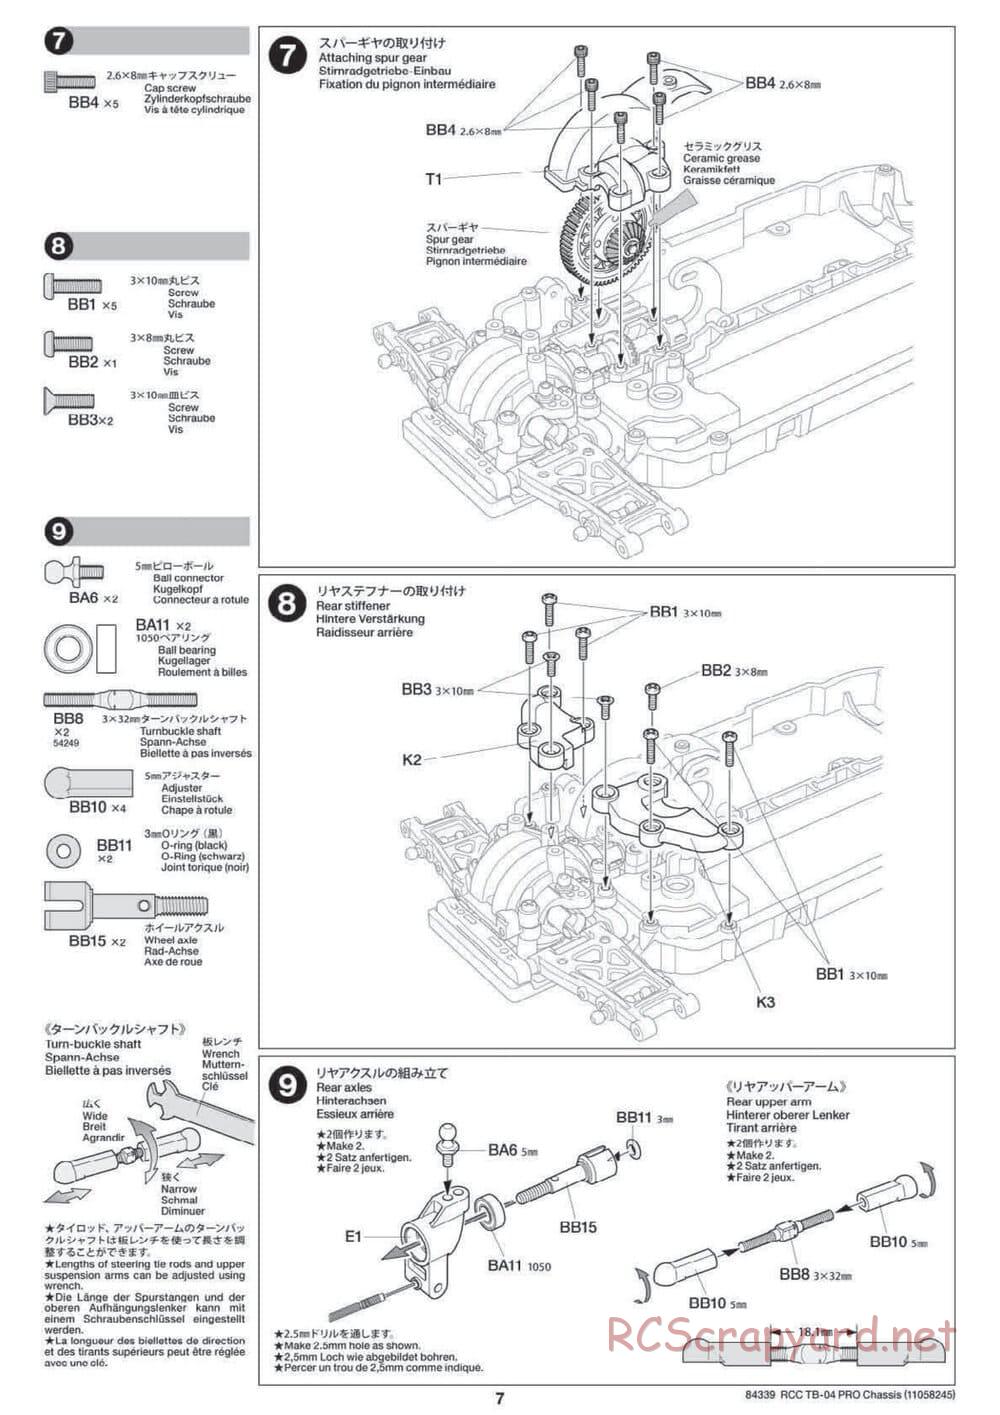 Tamiya - TB-04 Pro Chassis - Manual - Page 7